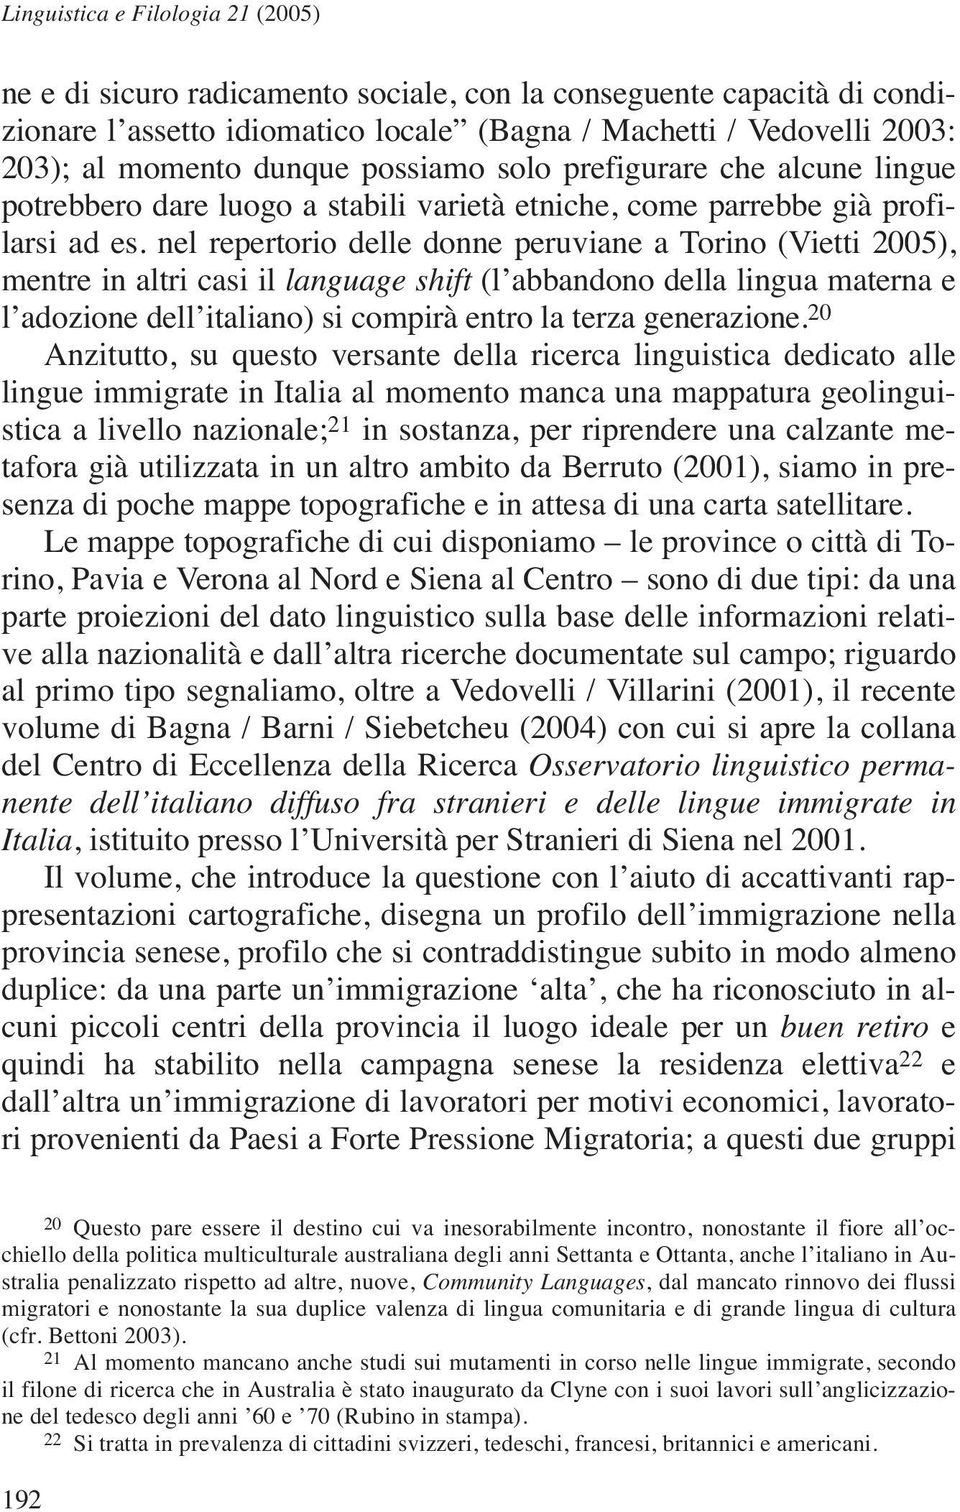 nel repertorio delle donne peruviane a Torino (Vietti 2005), mentre in altri casi il language shift (l abbandono della lingua materna e l adozione dell italiano) si compirà entro la terza generazione.